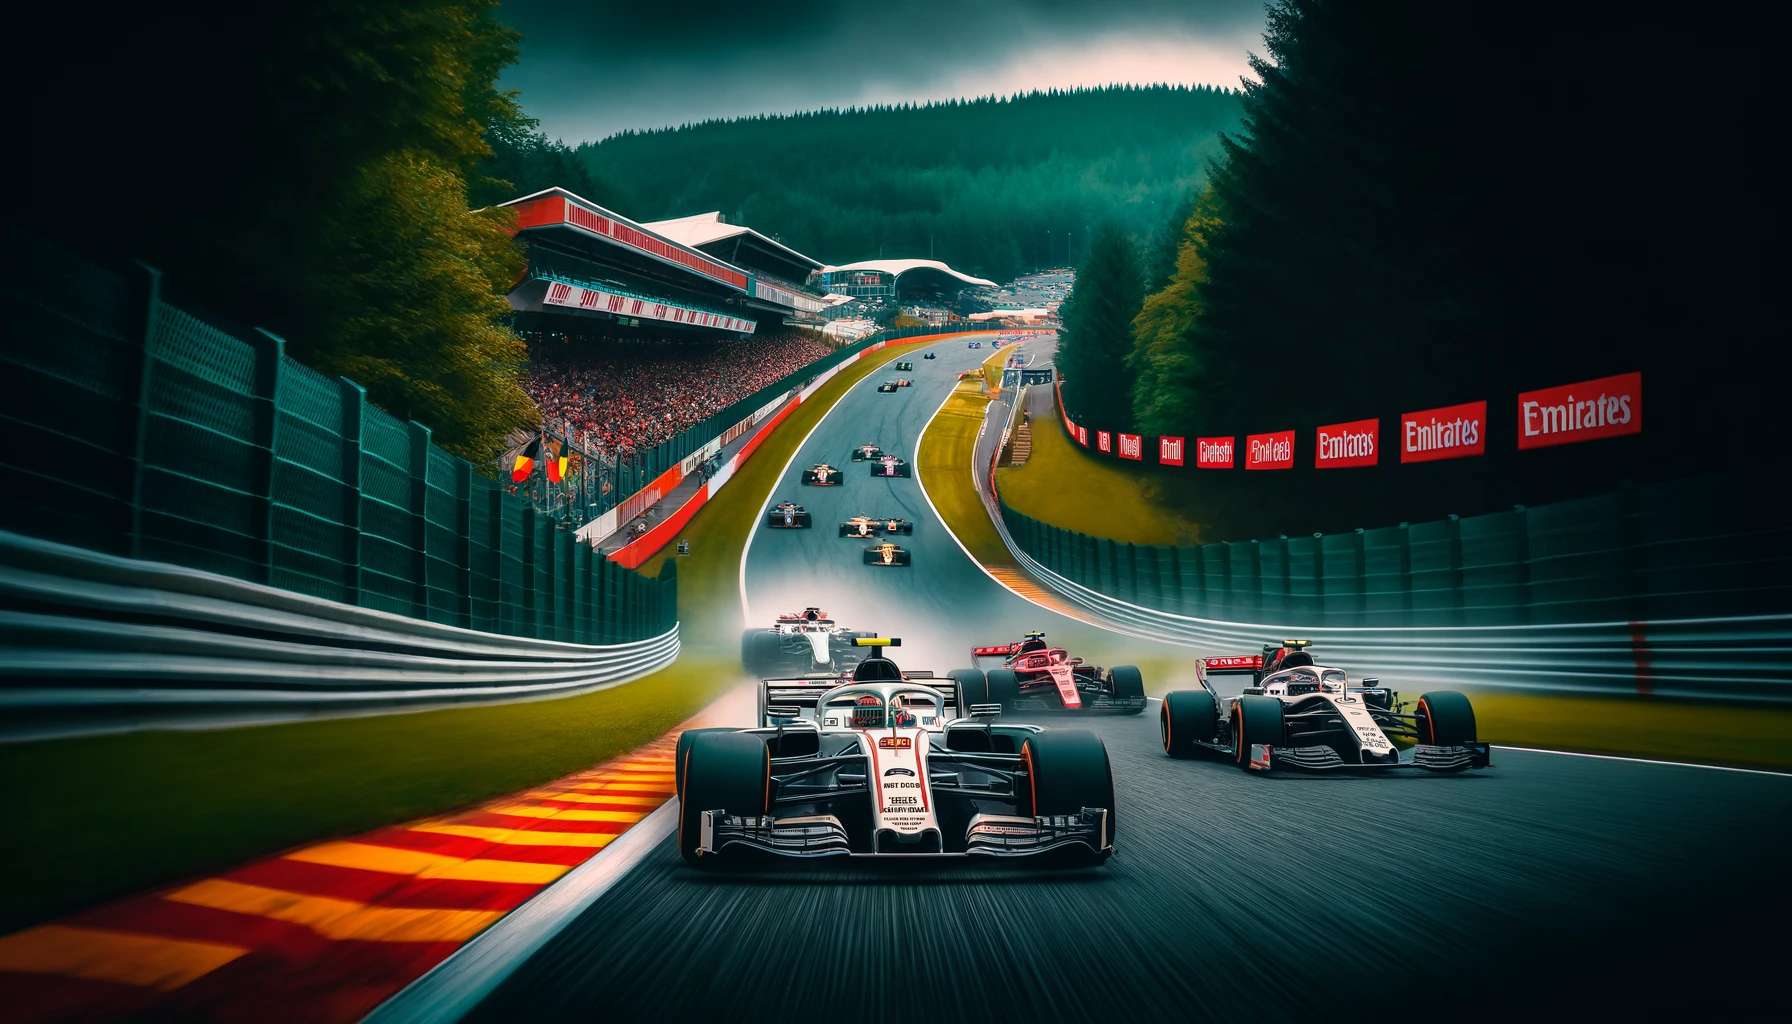 F1 Cars racing at the Spa F1 GP